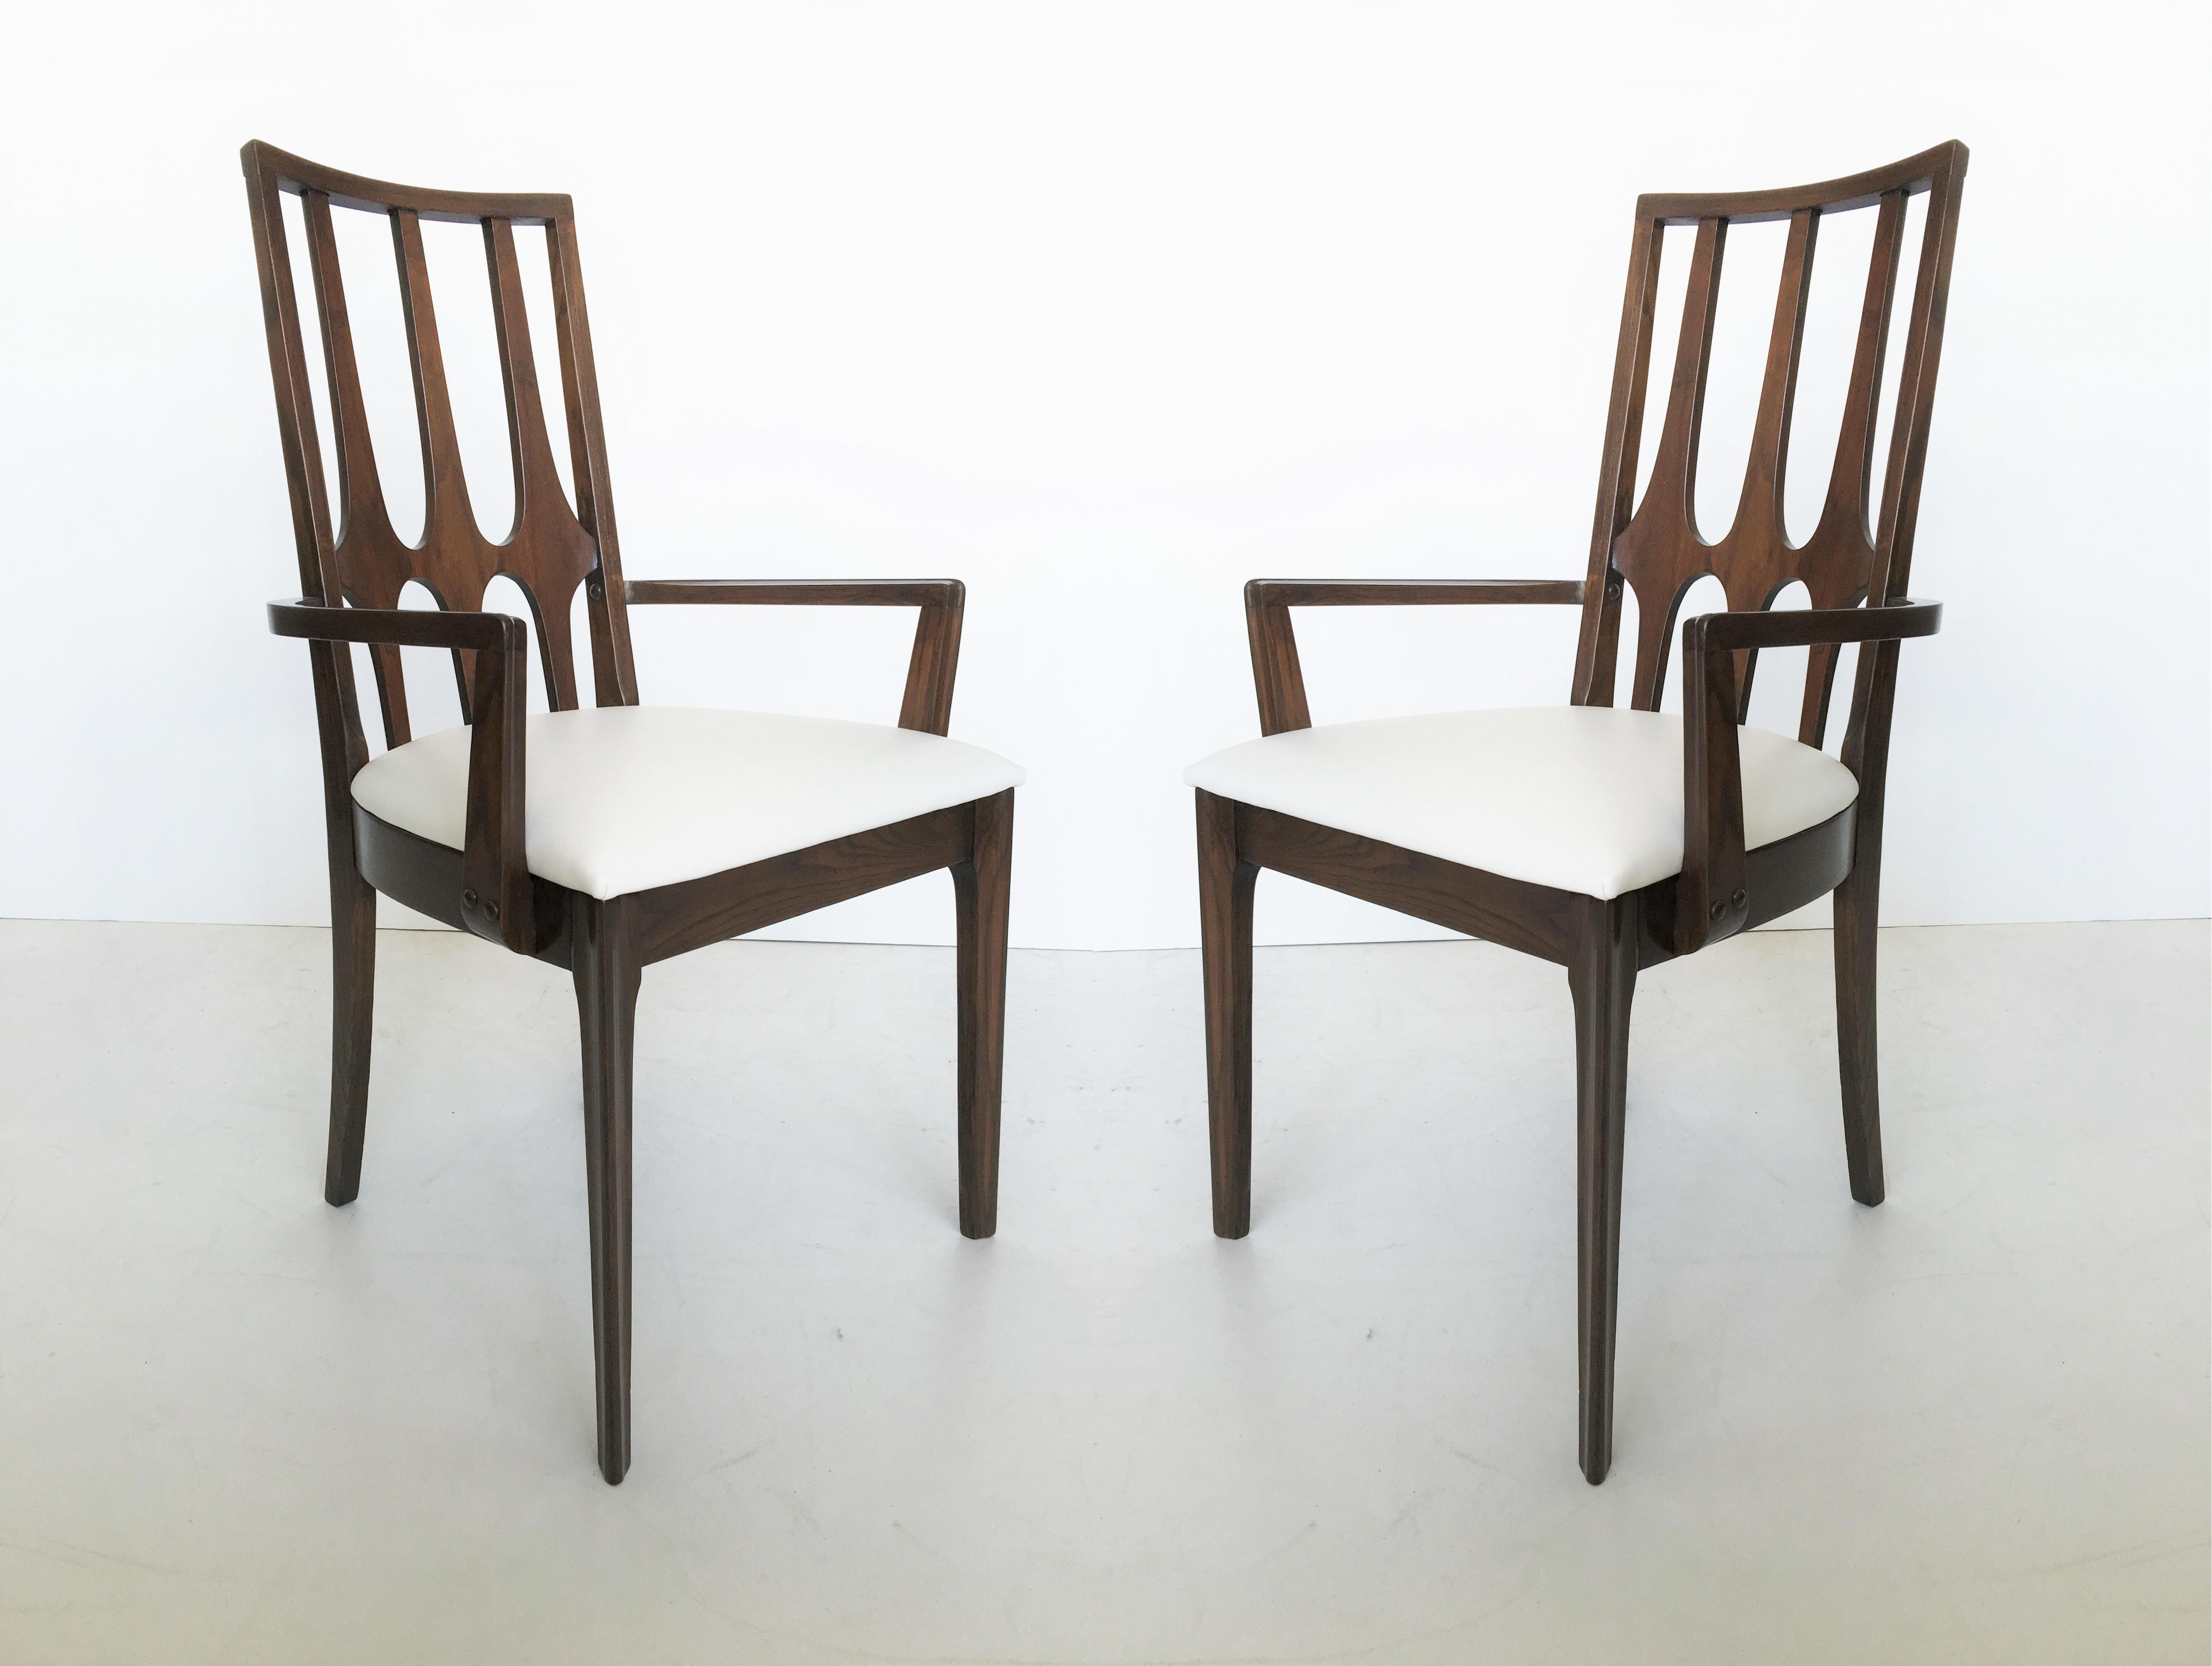 Ensemble de 8 chaises de salle à manger vintage en noyer fabriquées par Broyhill pour la collection Brasilia, vers le début des années 1960. Il s'agit d'une conception unique basée sur les plans d'un architecte de classe mondiale pour la nouvelle